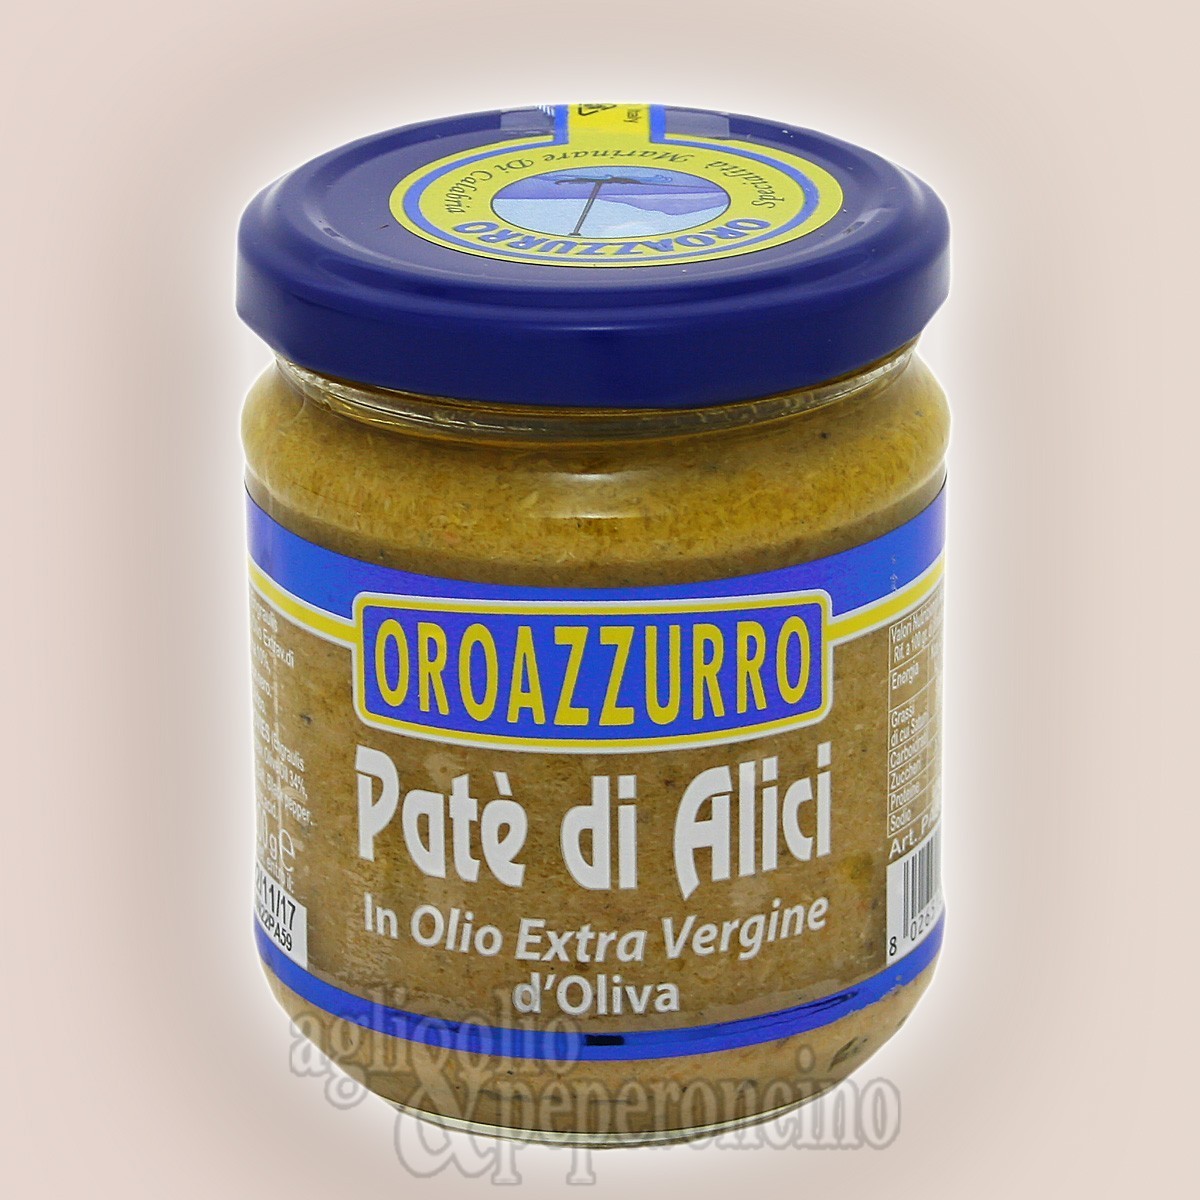 Patè di alici Oroazzurro con olio extravergine - Specialità ittica calabrese in vasetto da 200 gr.